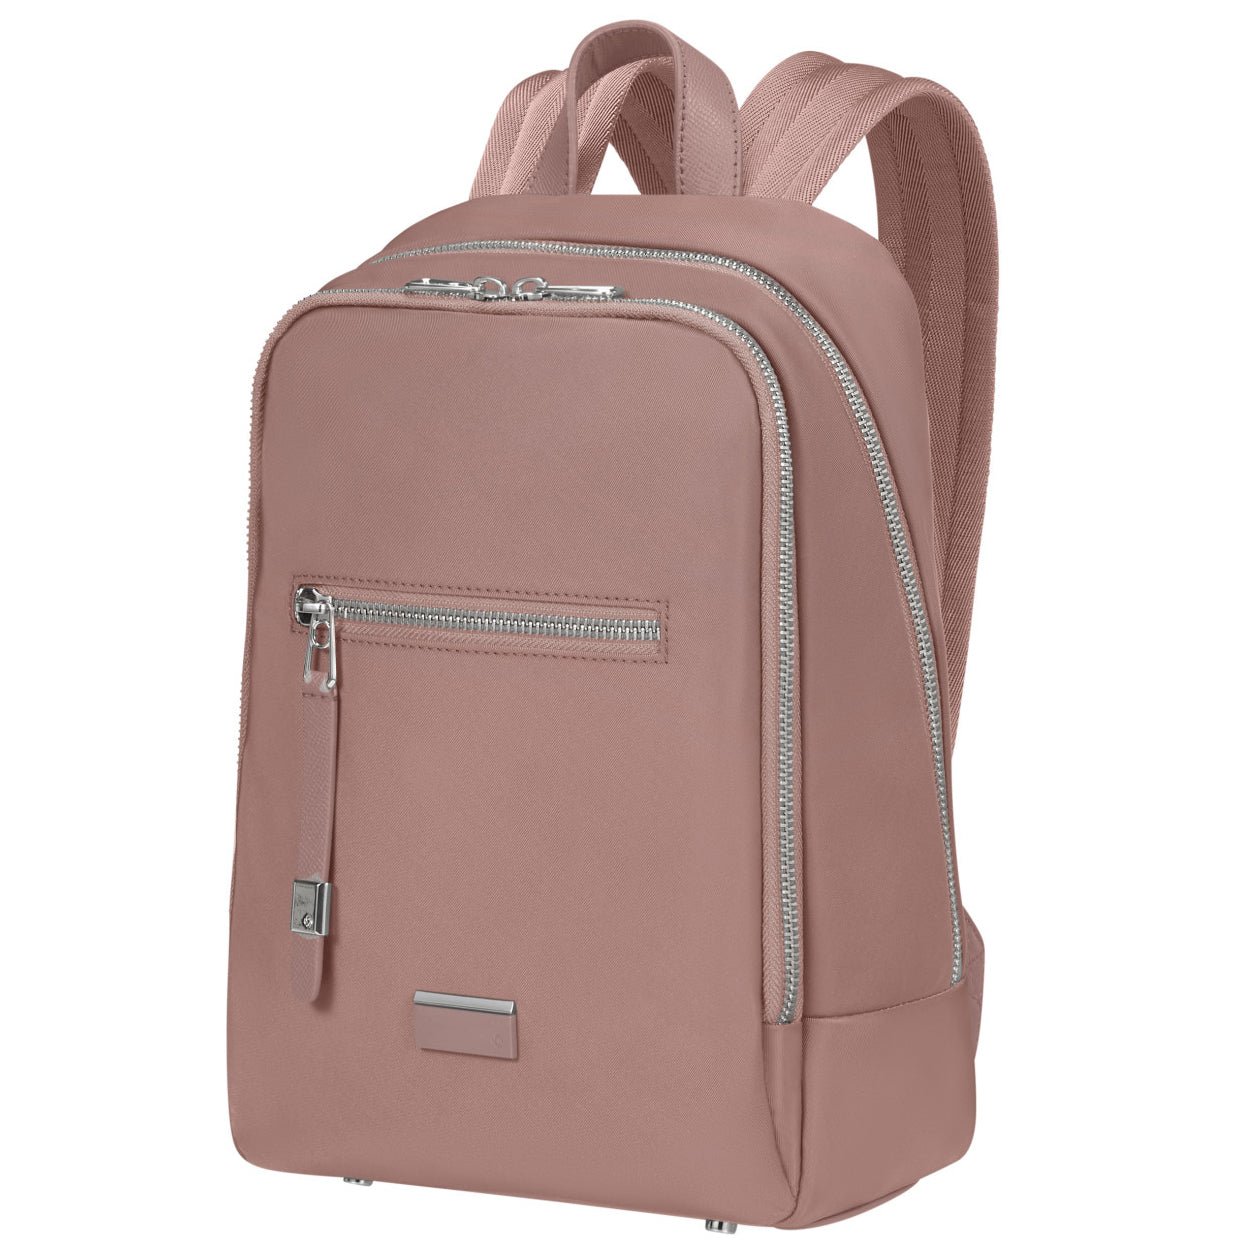 Samsonite Be-Her Backpack S 30 cm - Antique Pink